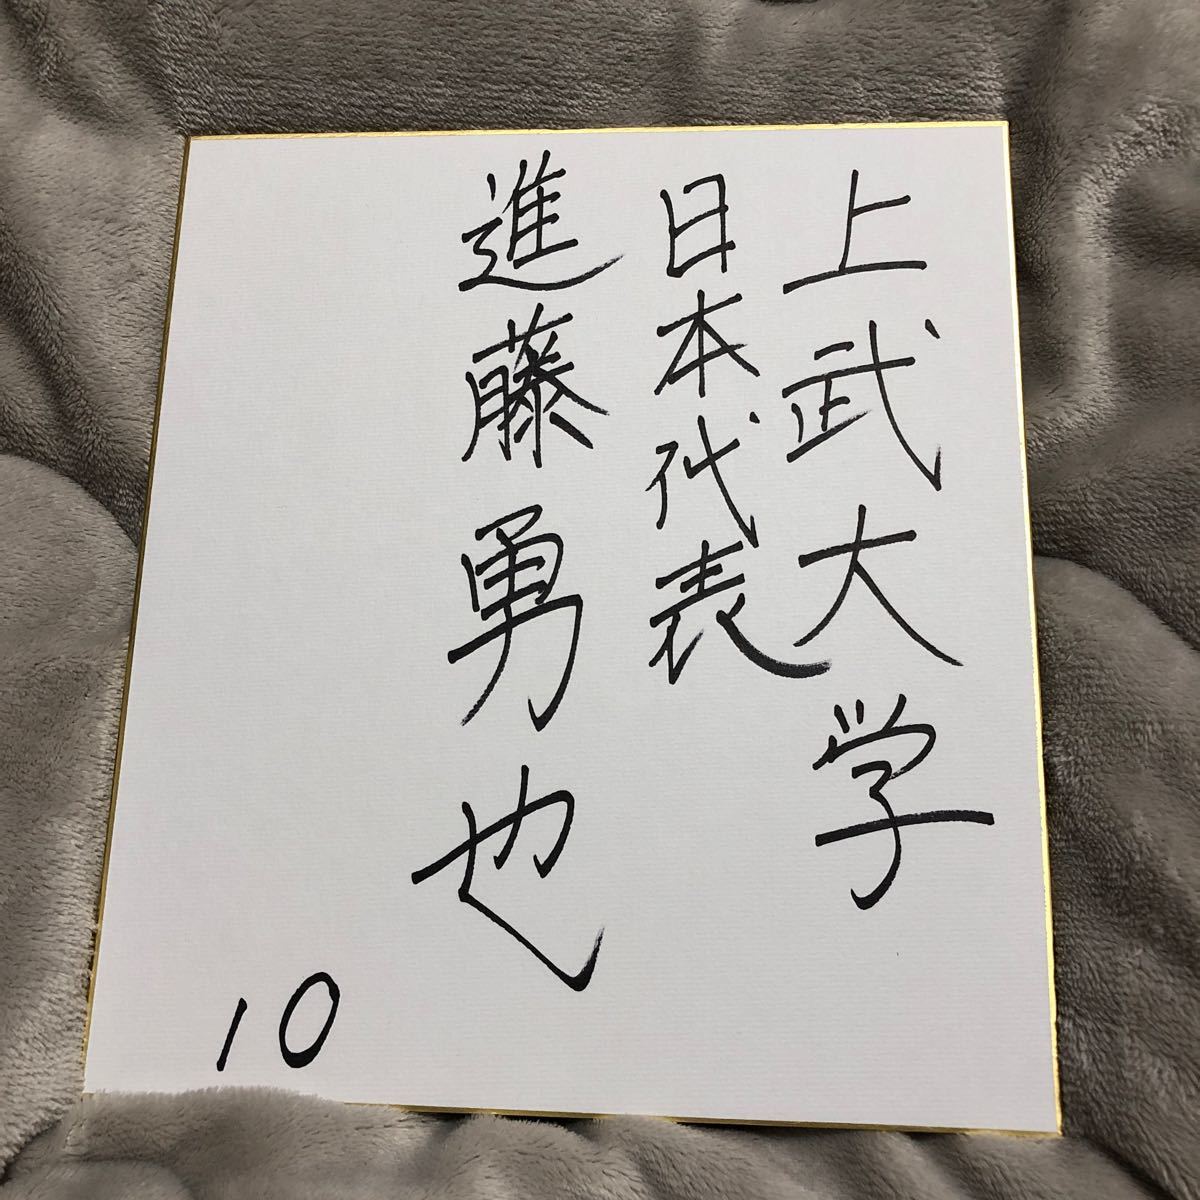 北海道日本火腿斗士 新藤优也亲笔签名彩色纸新秀, 棒球, 纪念品, 相关商品, 符号